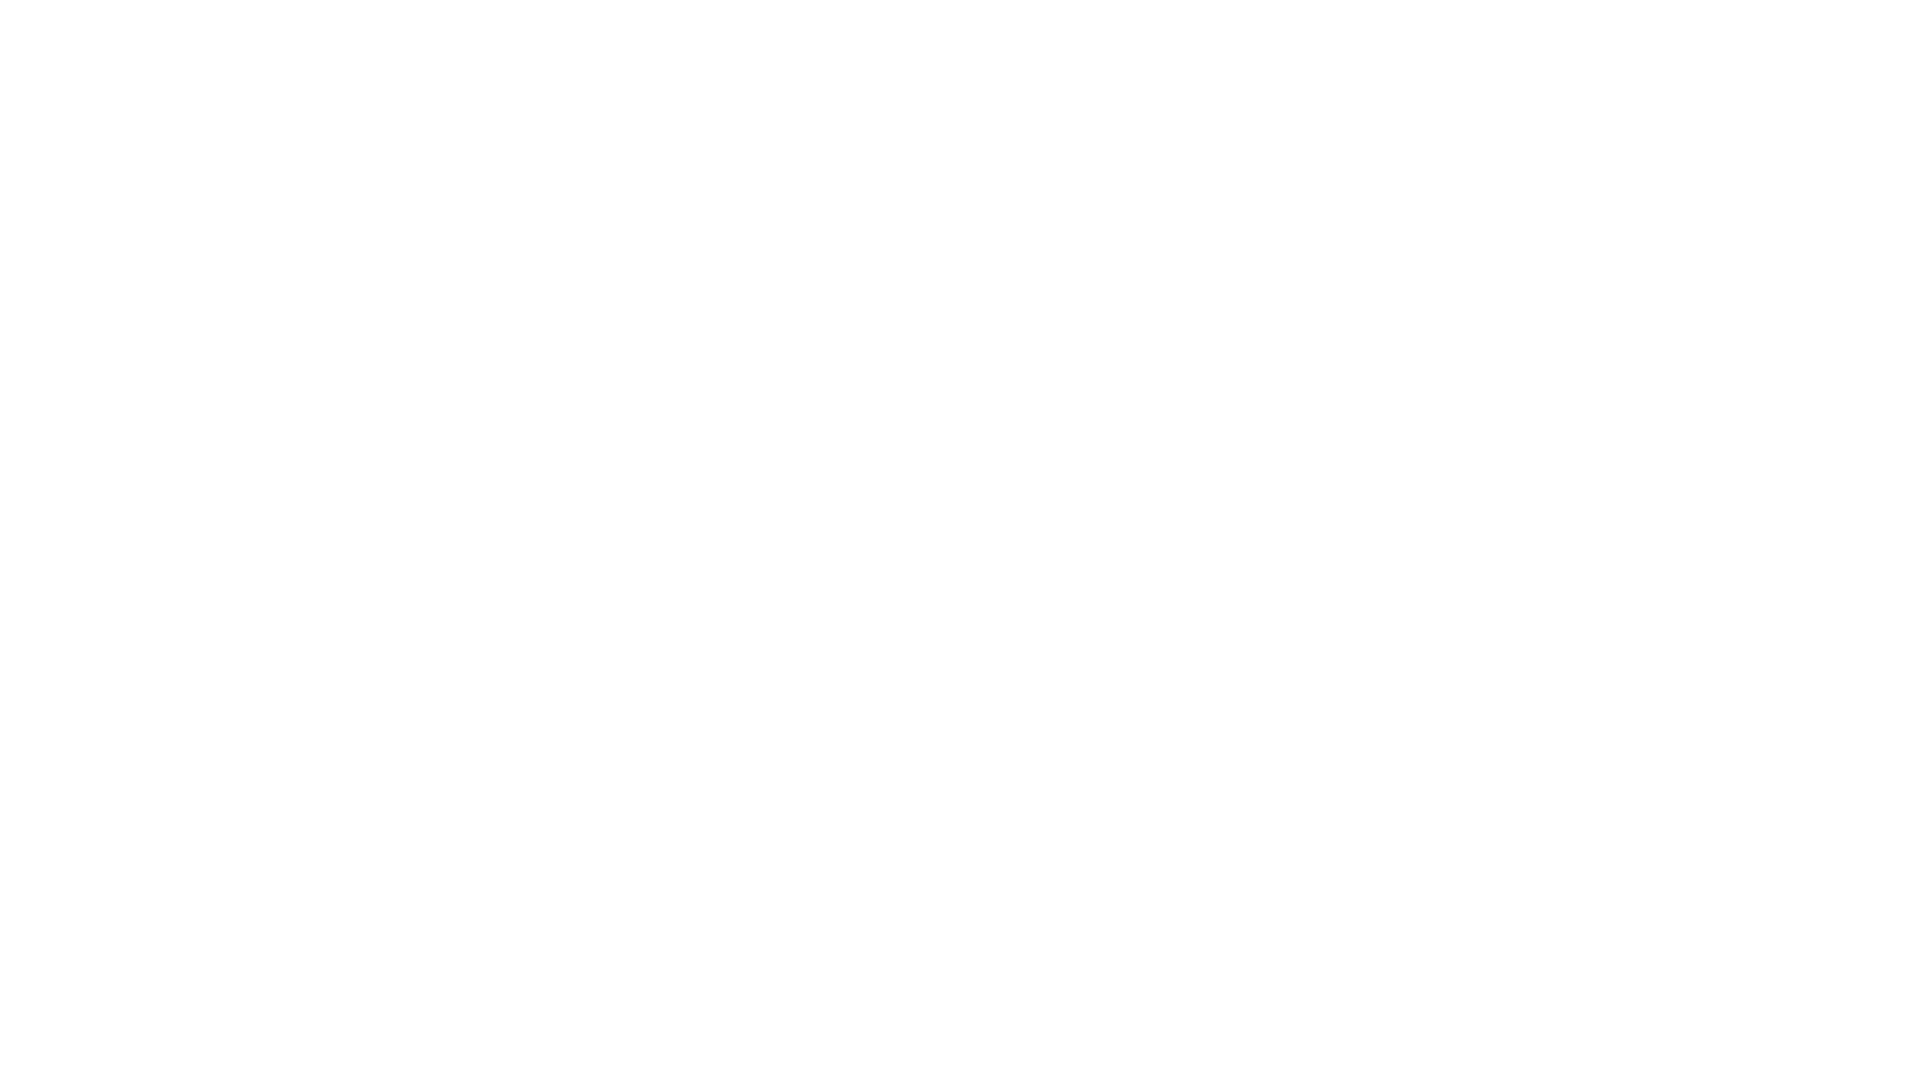 42nd festival